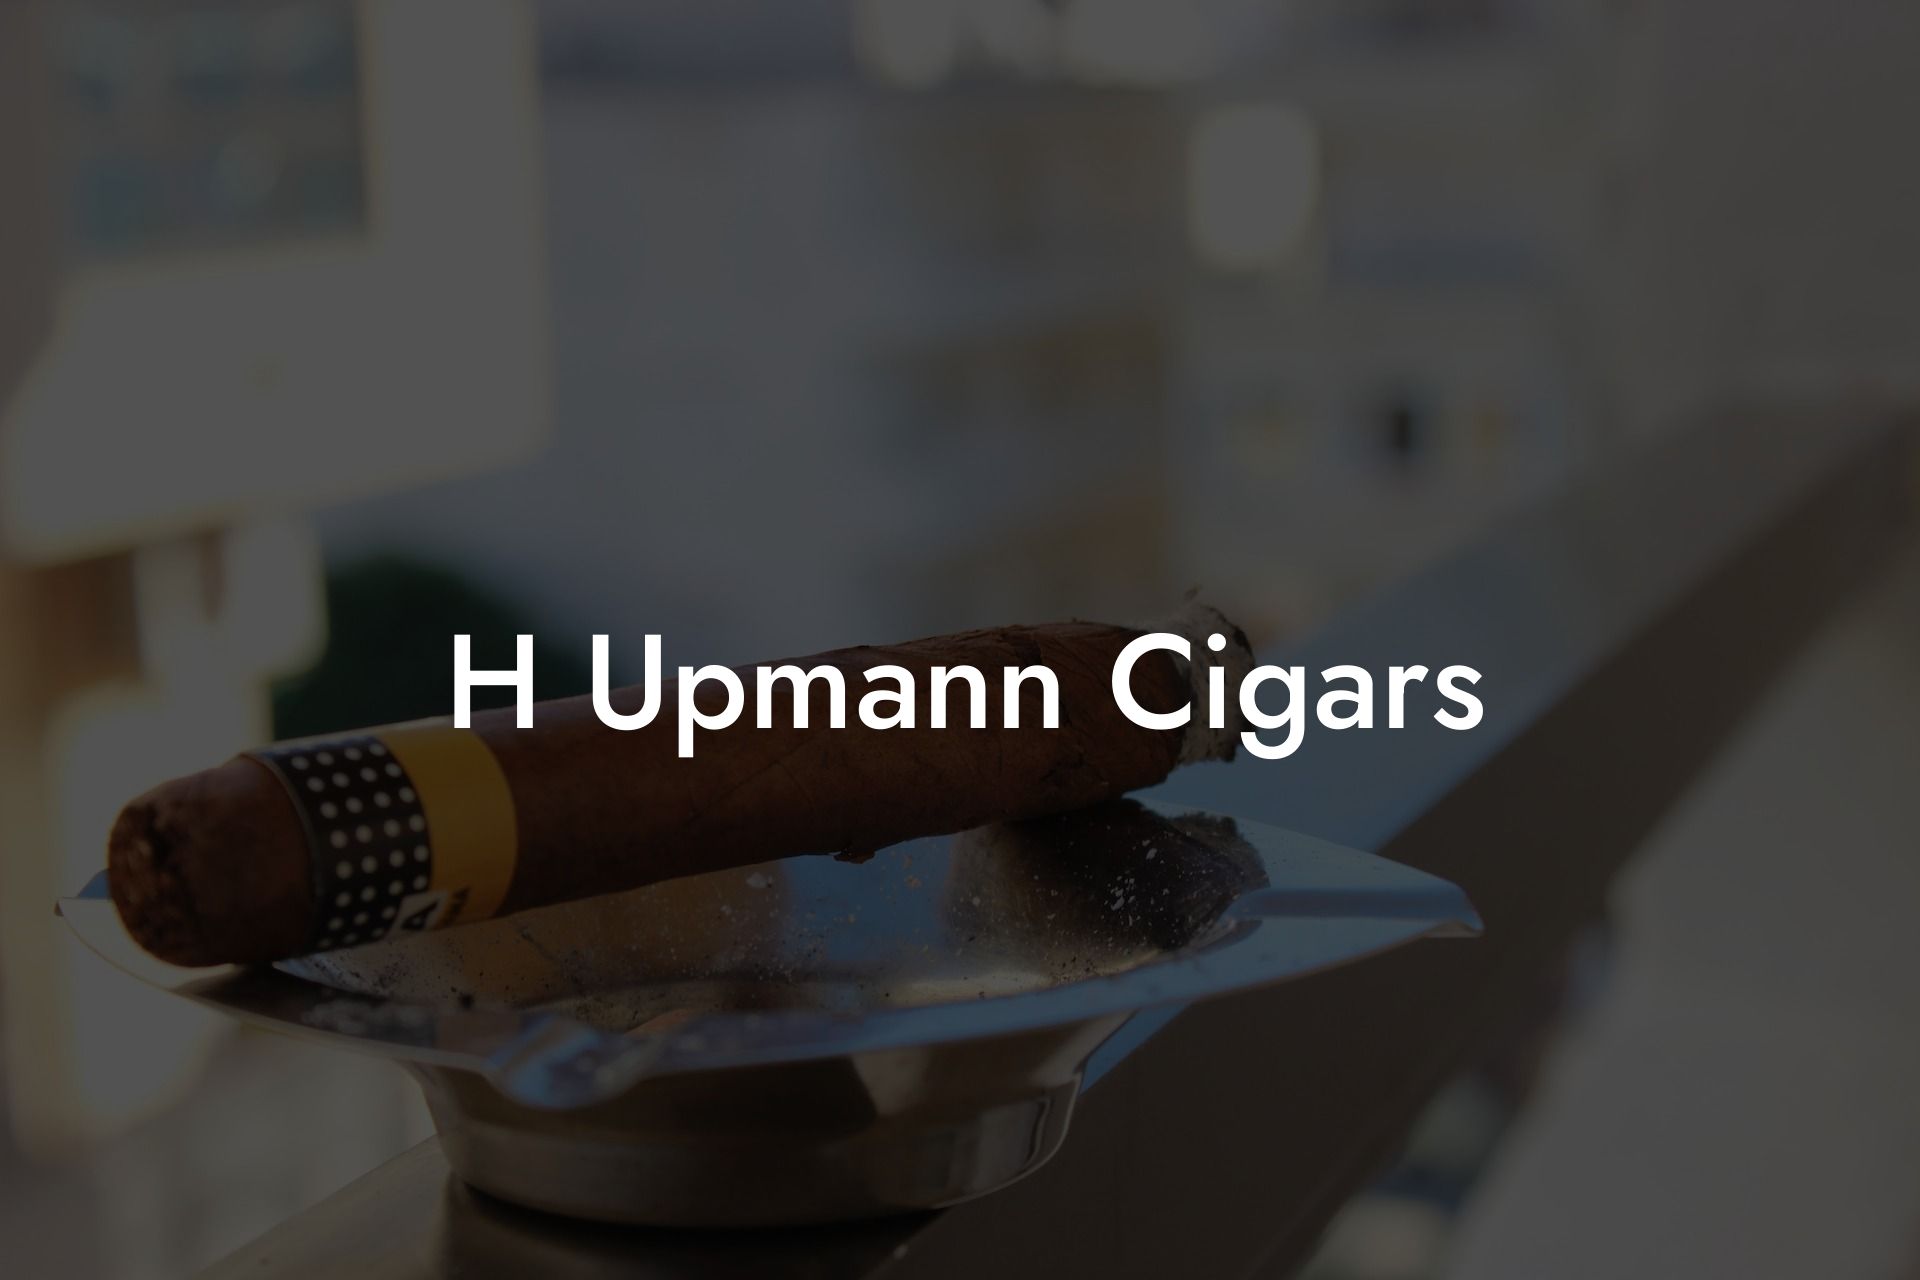 H Upmann Cigars